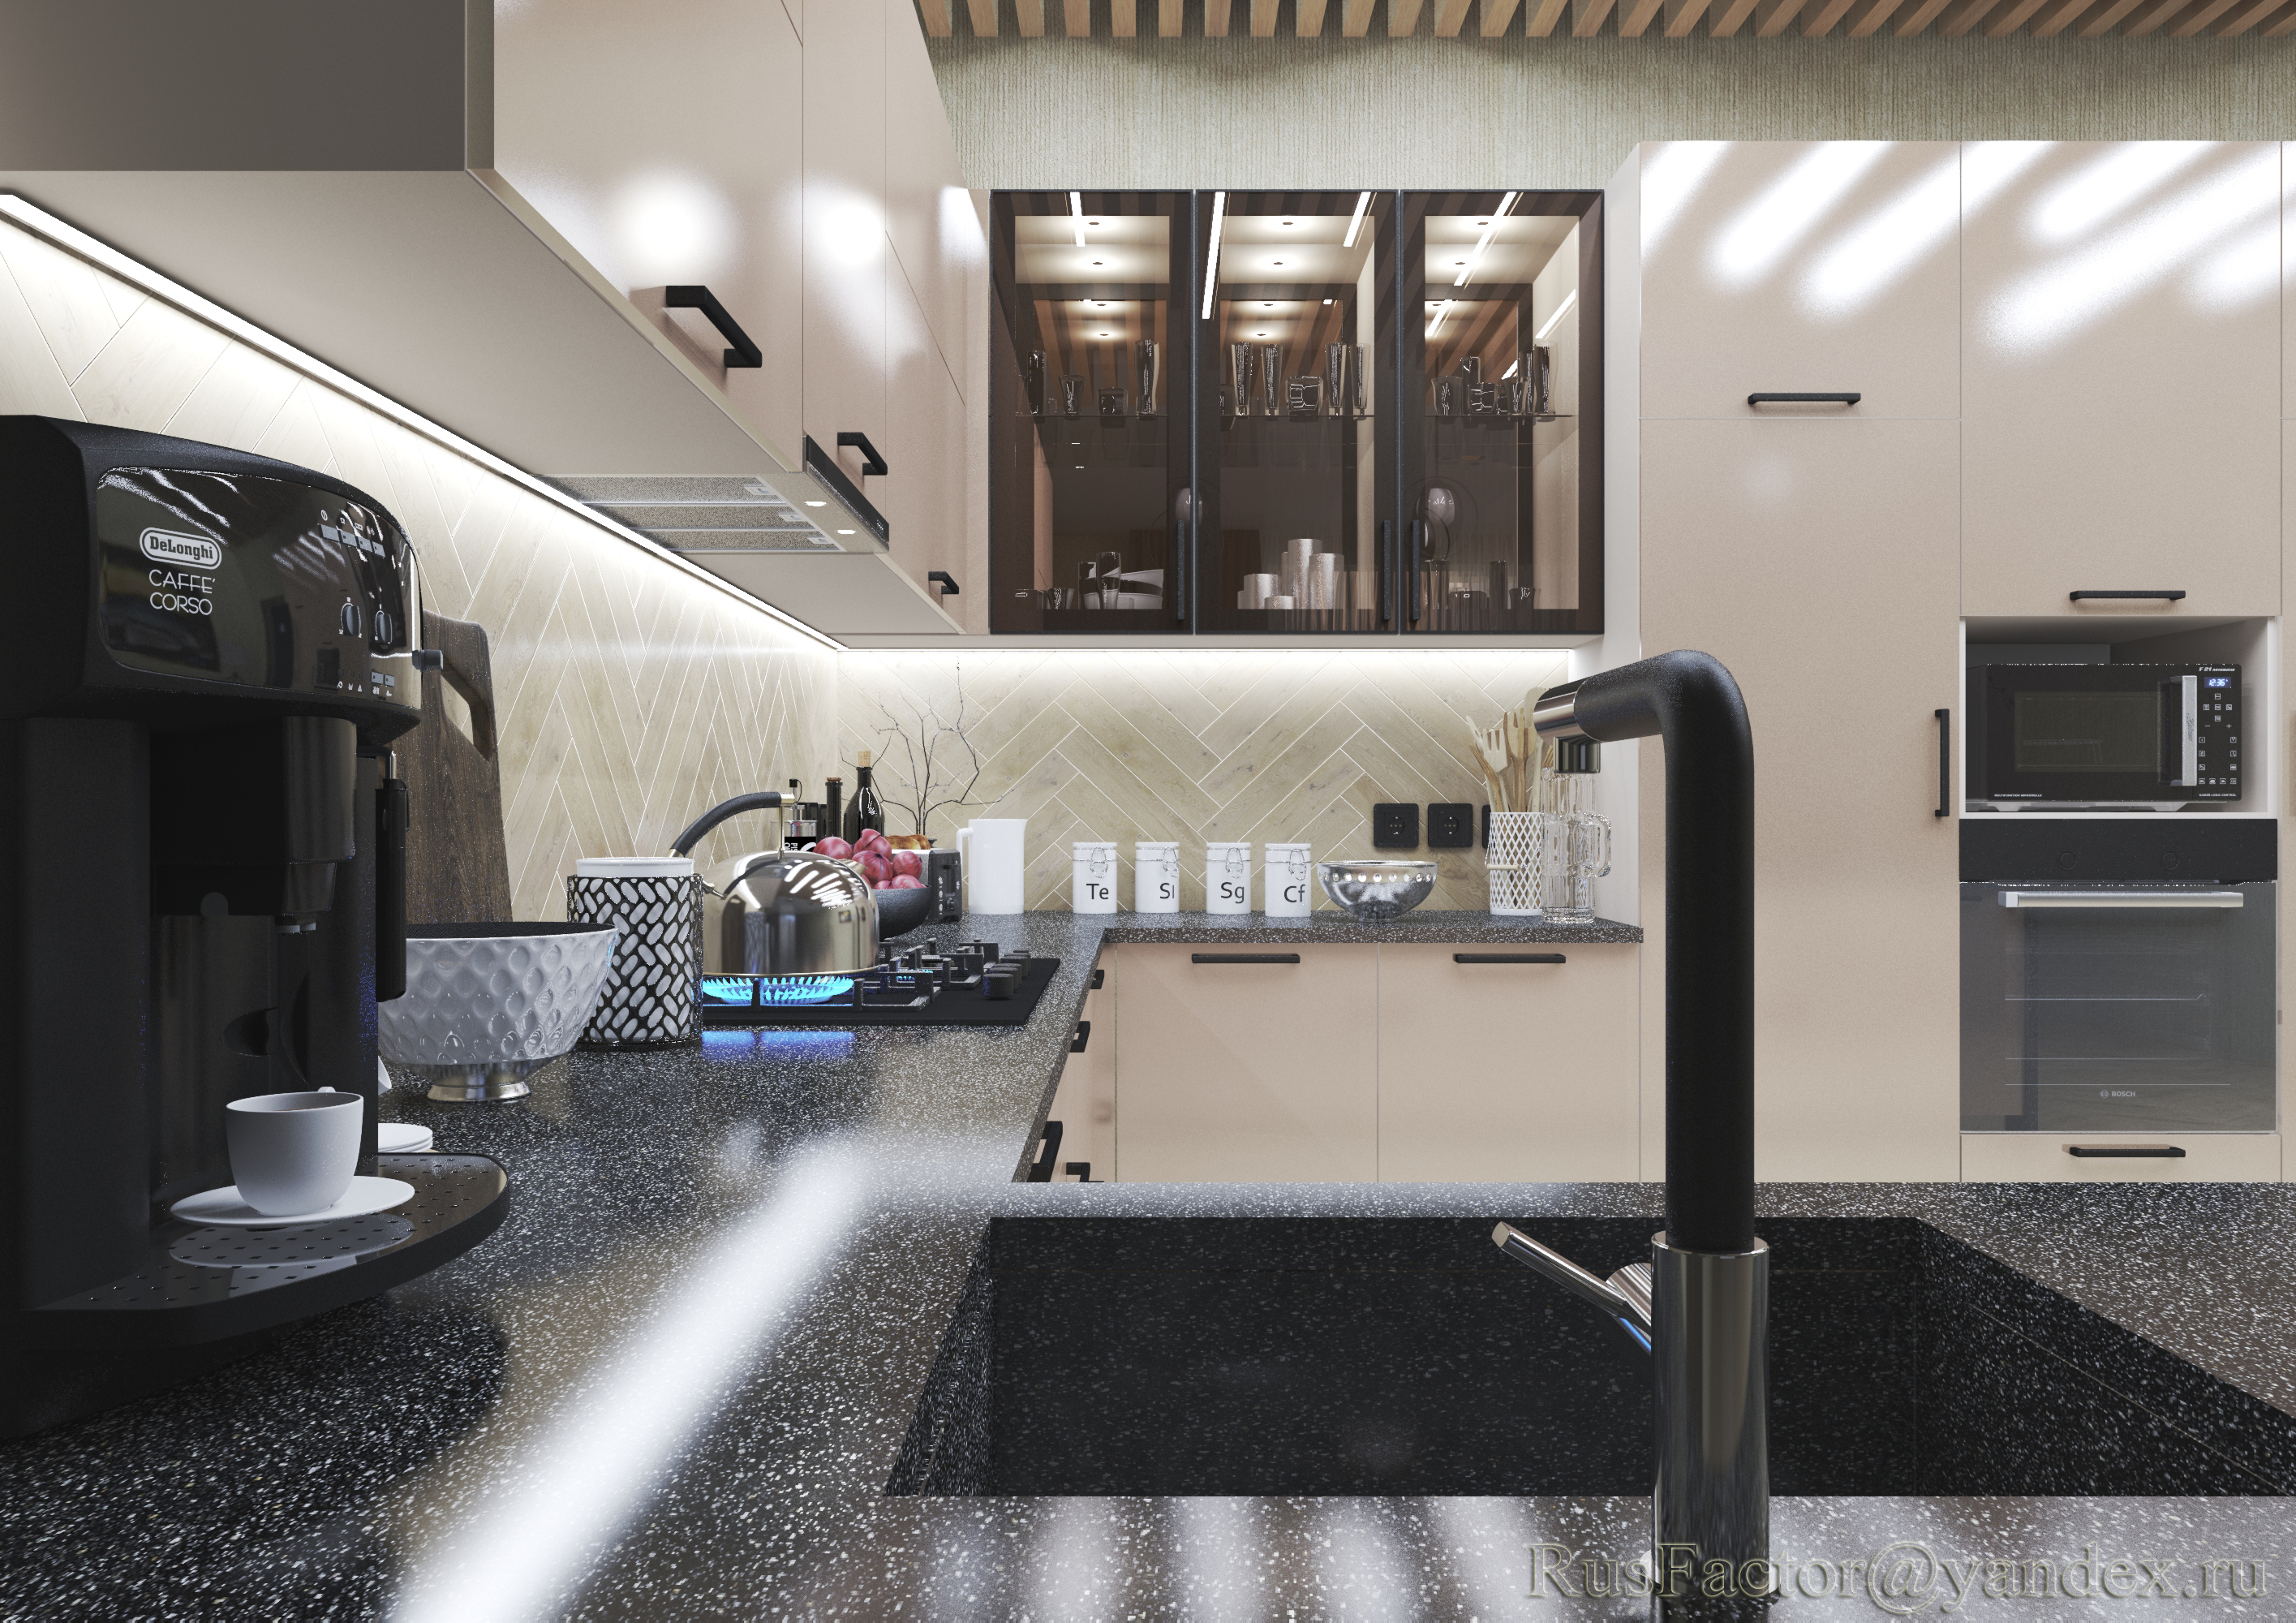 imagen de Gran cocina moderna en forma de U (iluminación diurna y nocturna) en 3d max vray 3.0